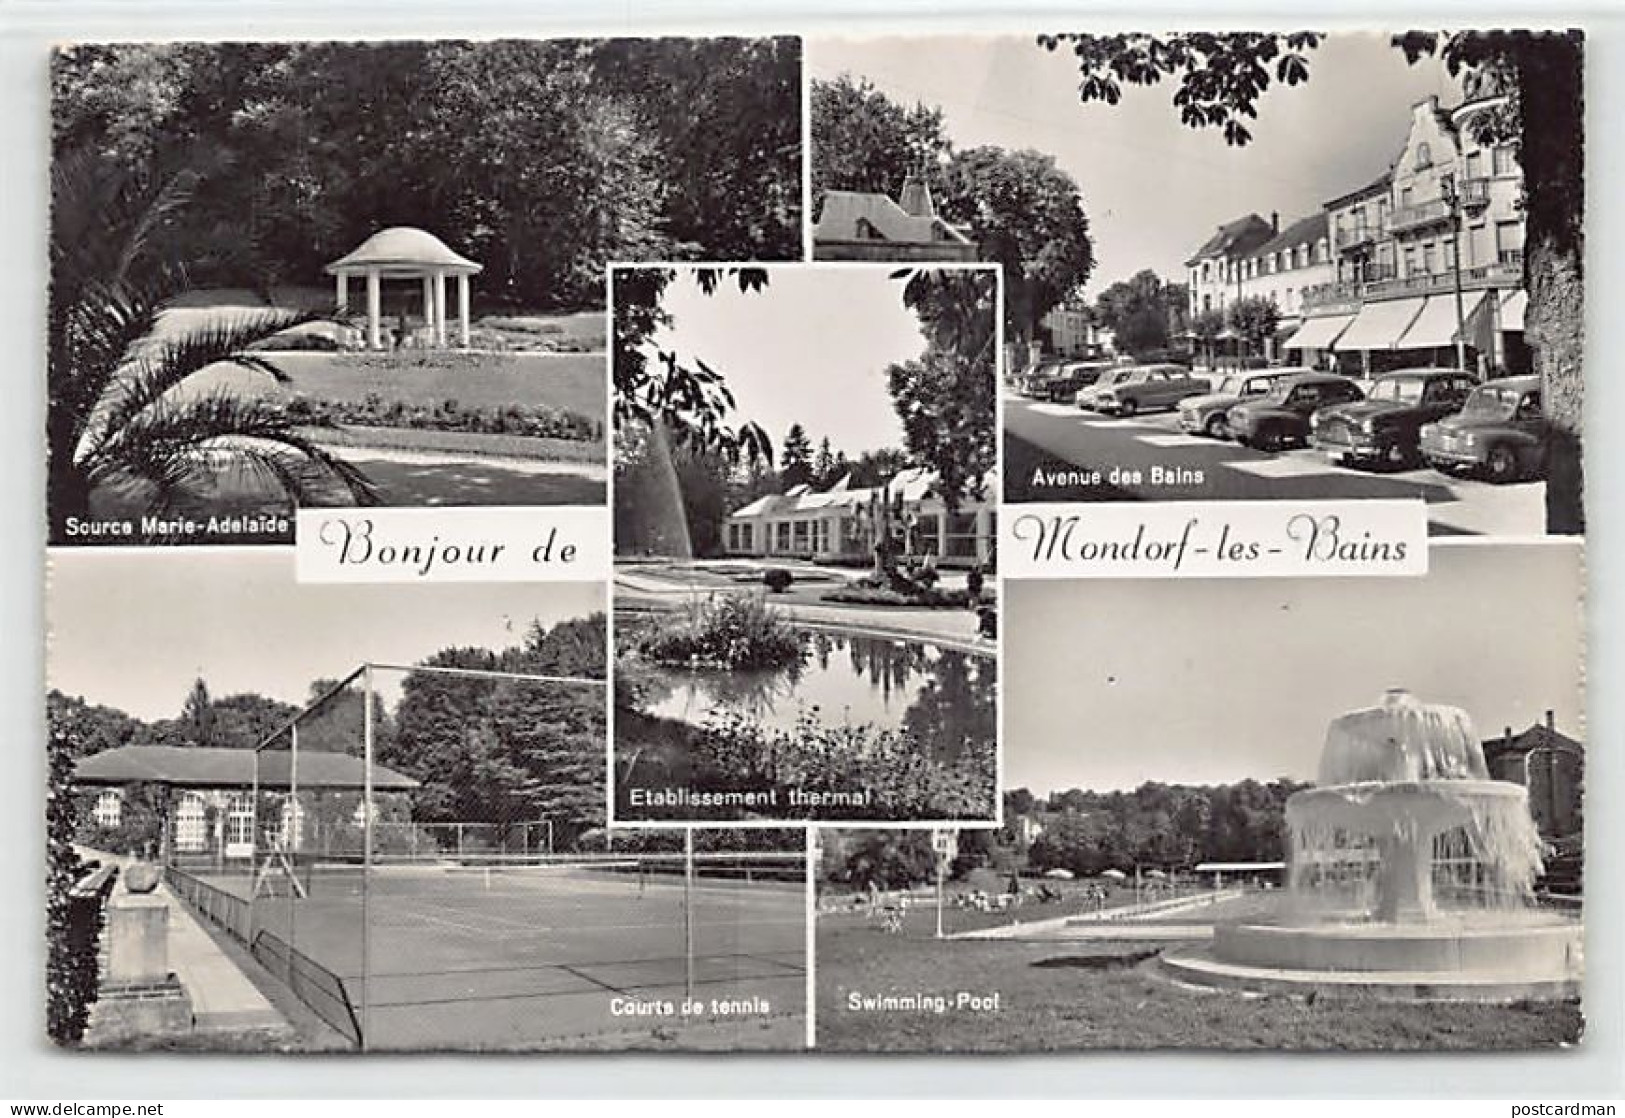 Luxembourg - MONDORF LES BAINS - Courts De Tennis - Source Marie-Adélaïde - Avenue Des Bains - Swimming-pool - Ed. Paul  - Mondorf-les-Bains